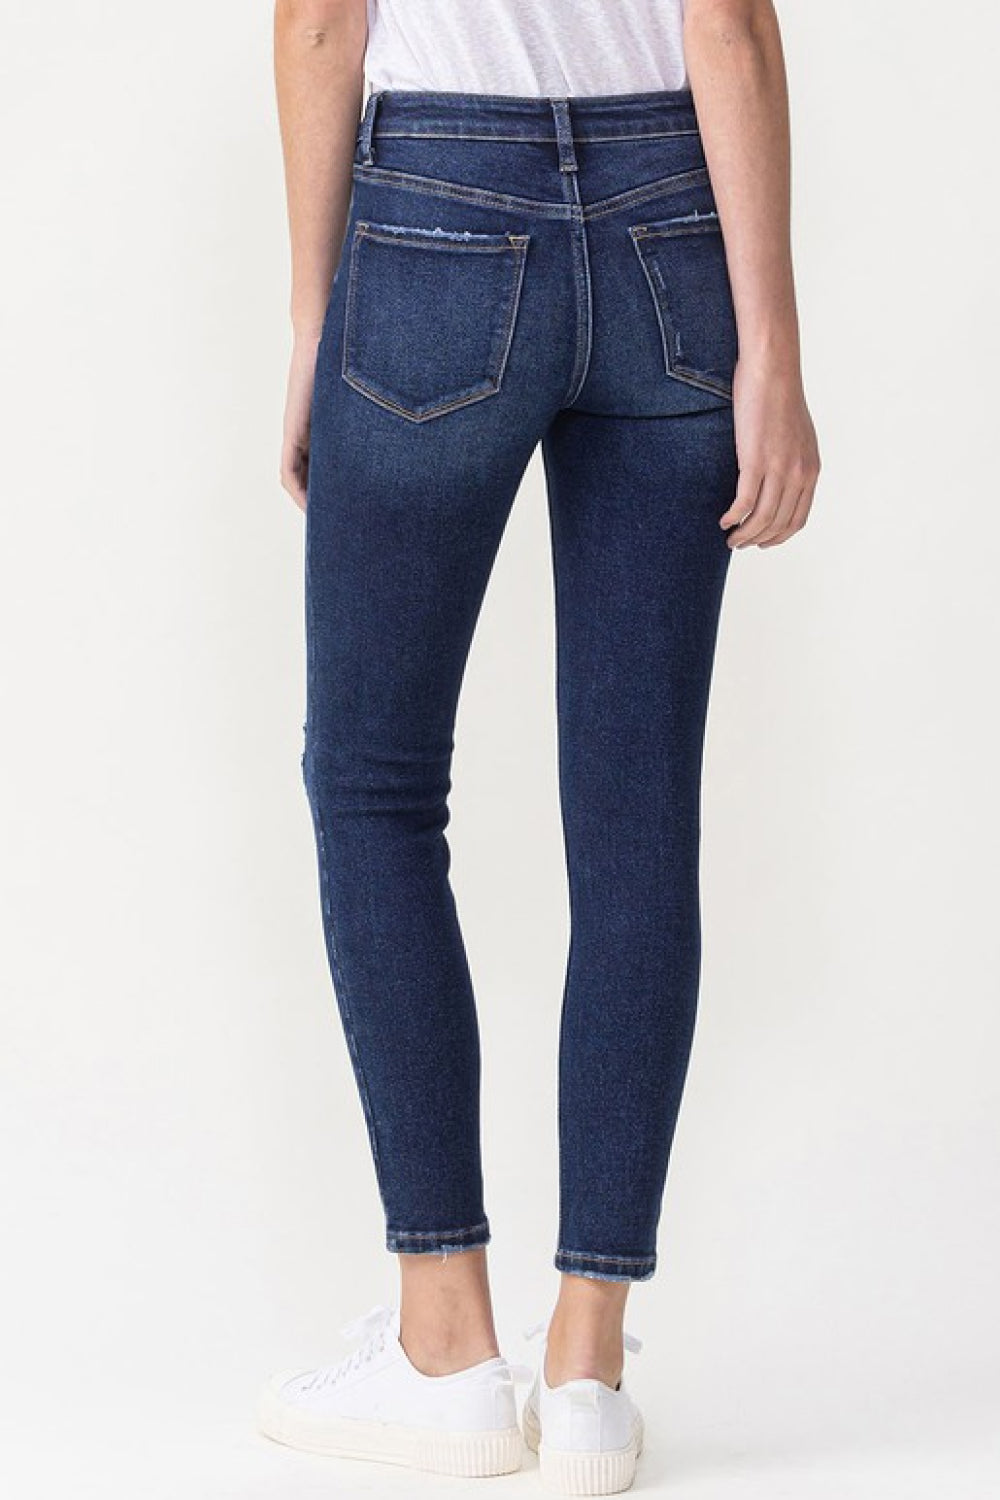 Lovervet Full Size Chelsea Midrise Crop Skinny Jeans - bertofonsi